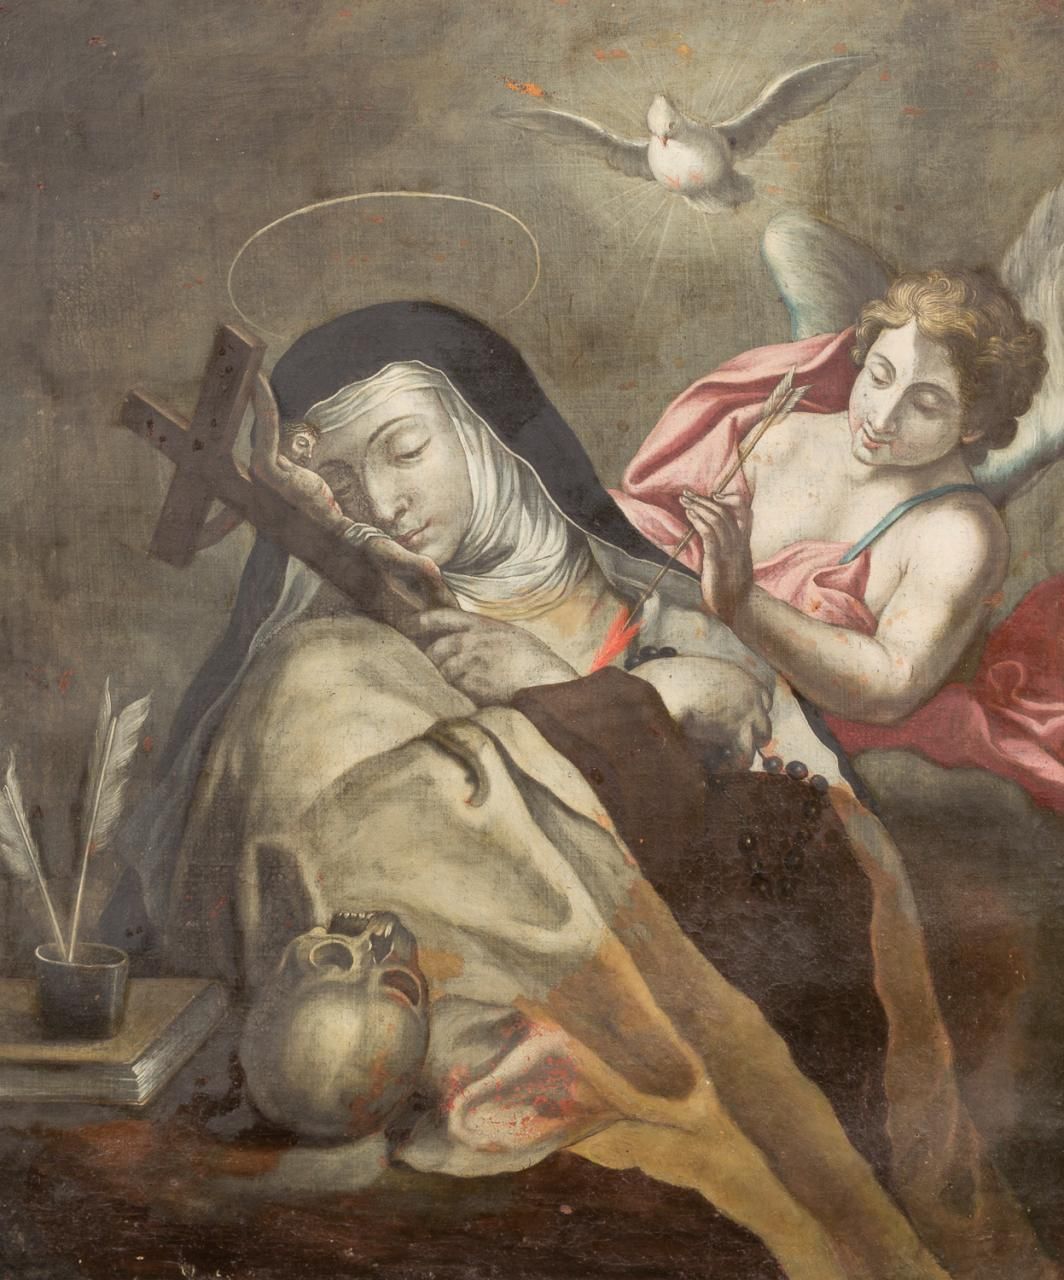 ESCUELA ITALIANA, S. XVII L'extase de sainte Thérèse
Huile sur toile
77 x 64 cm